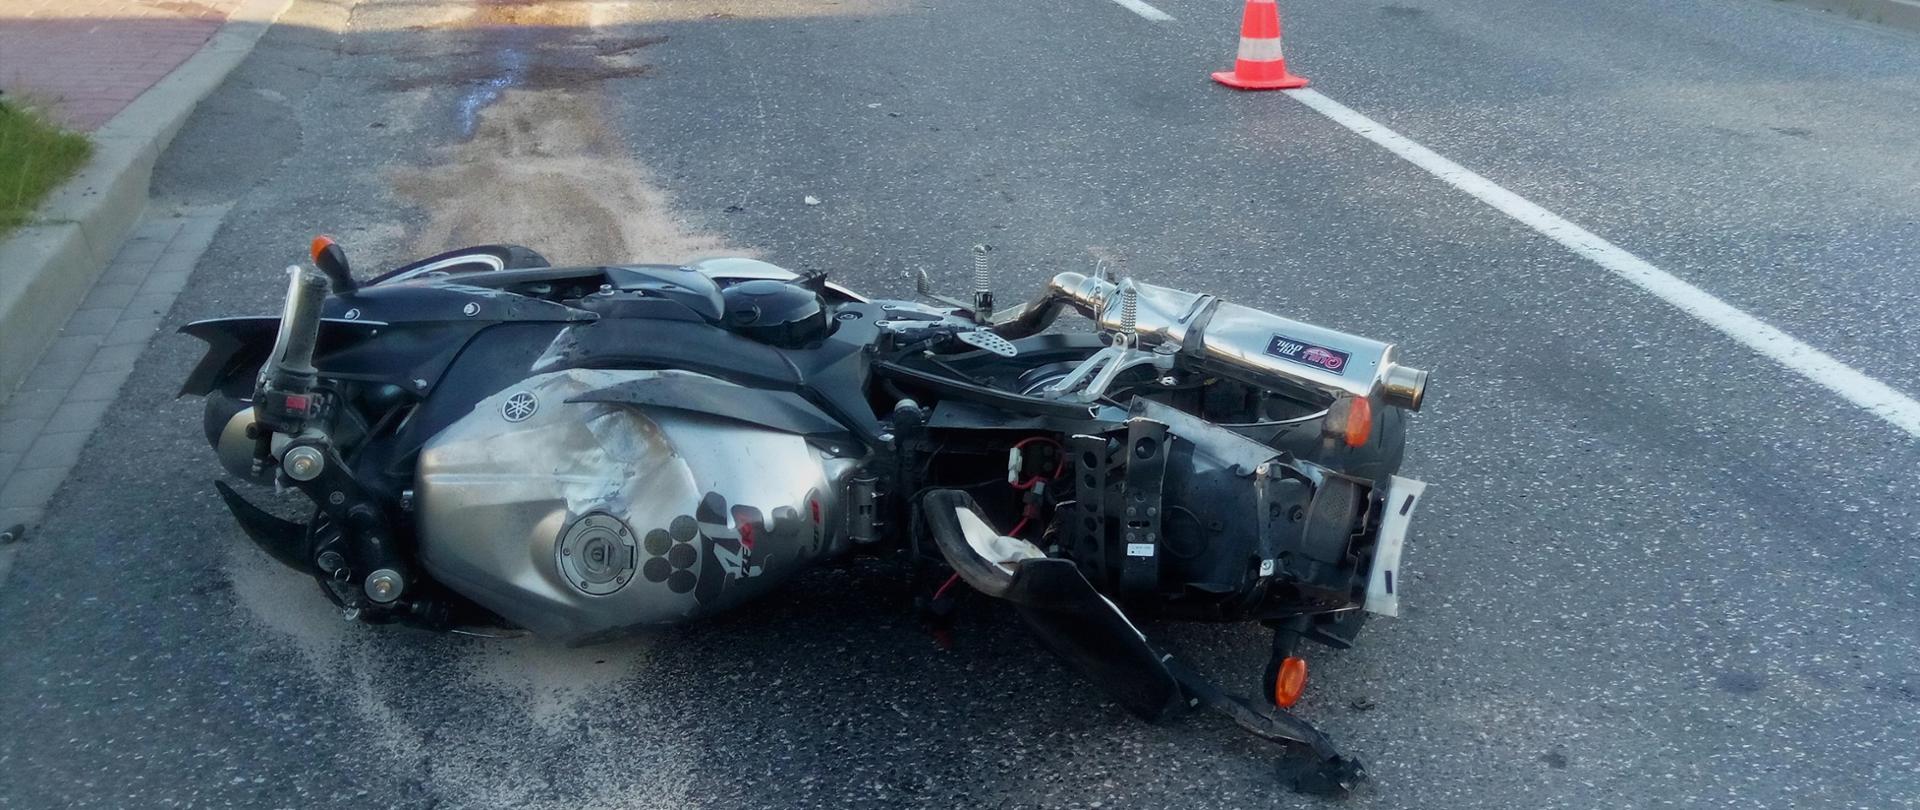 Zdjęcie przedstawia motocykl, który uległ wypadkowi i leży na boku na jezdni